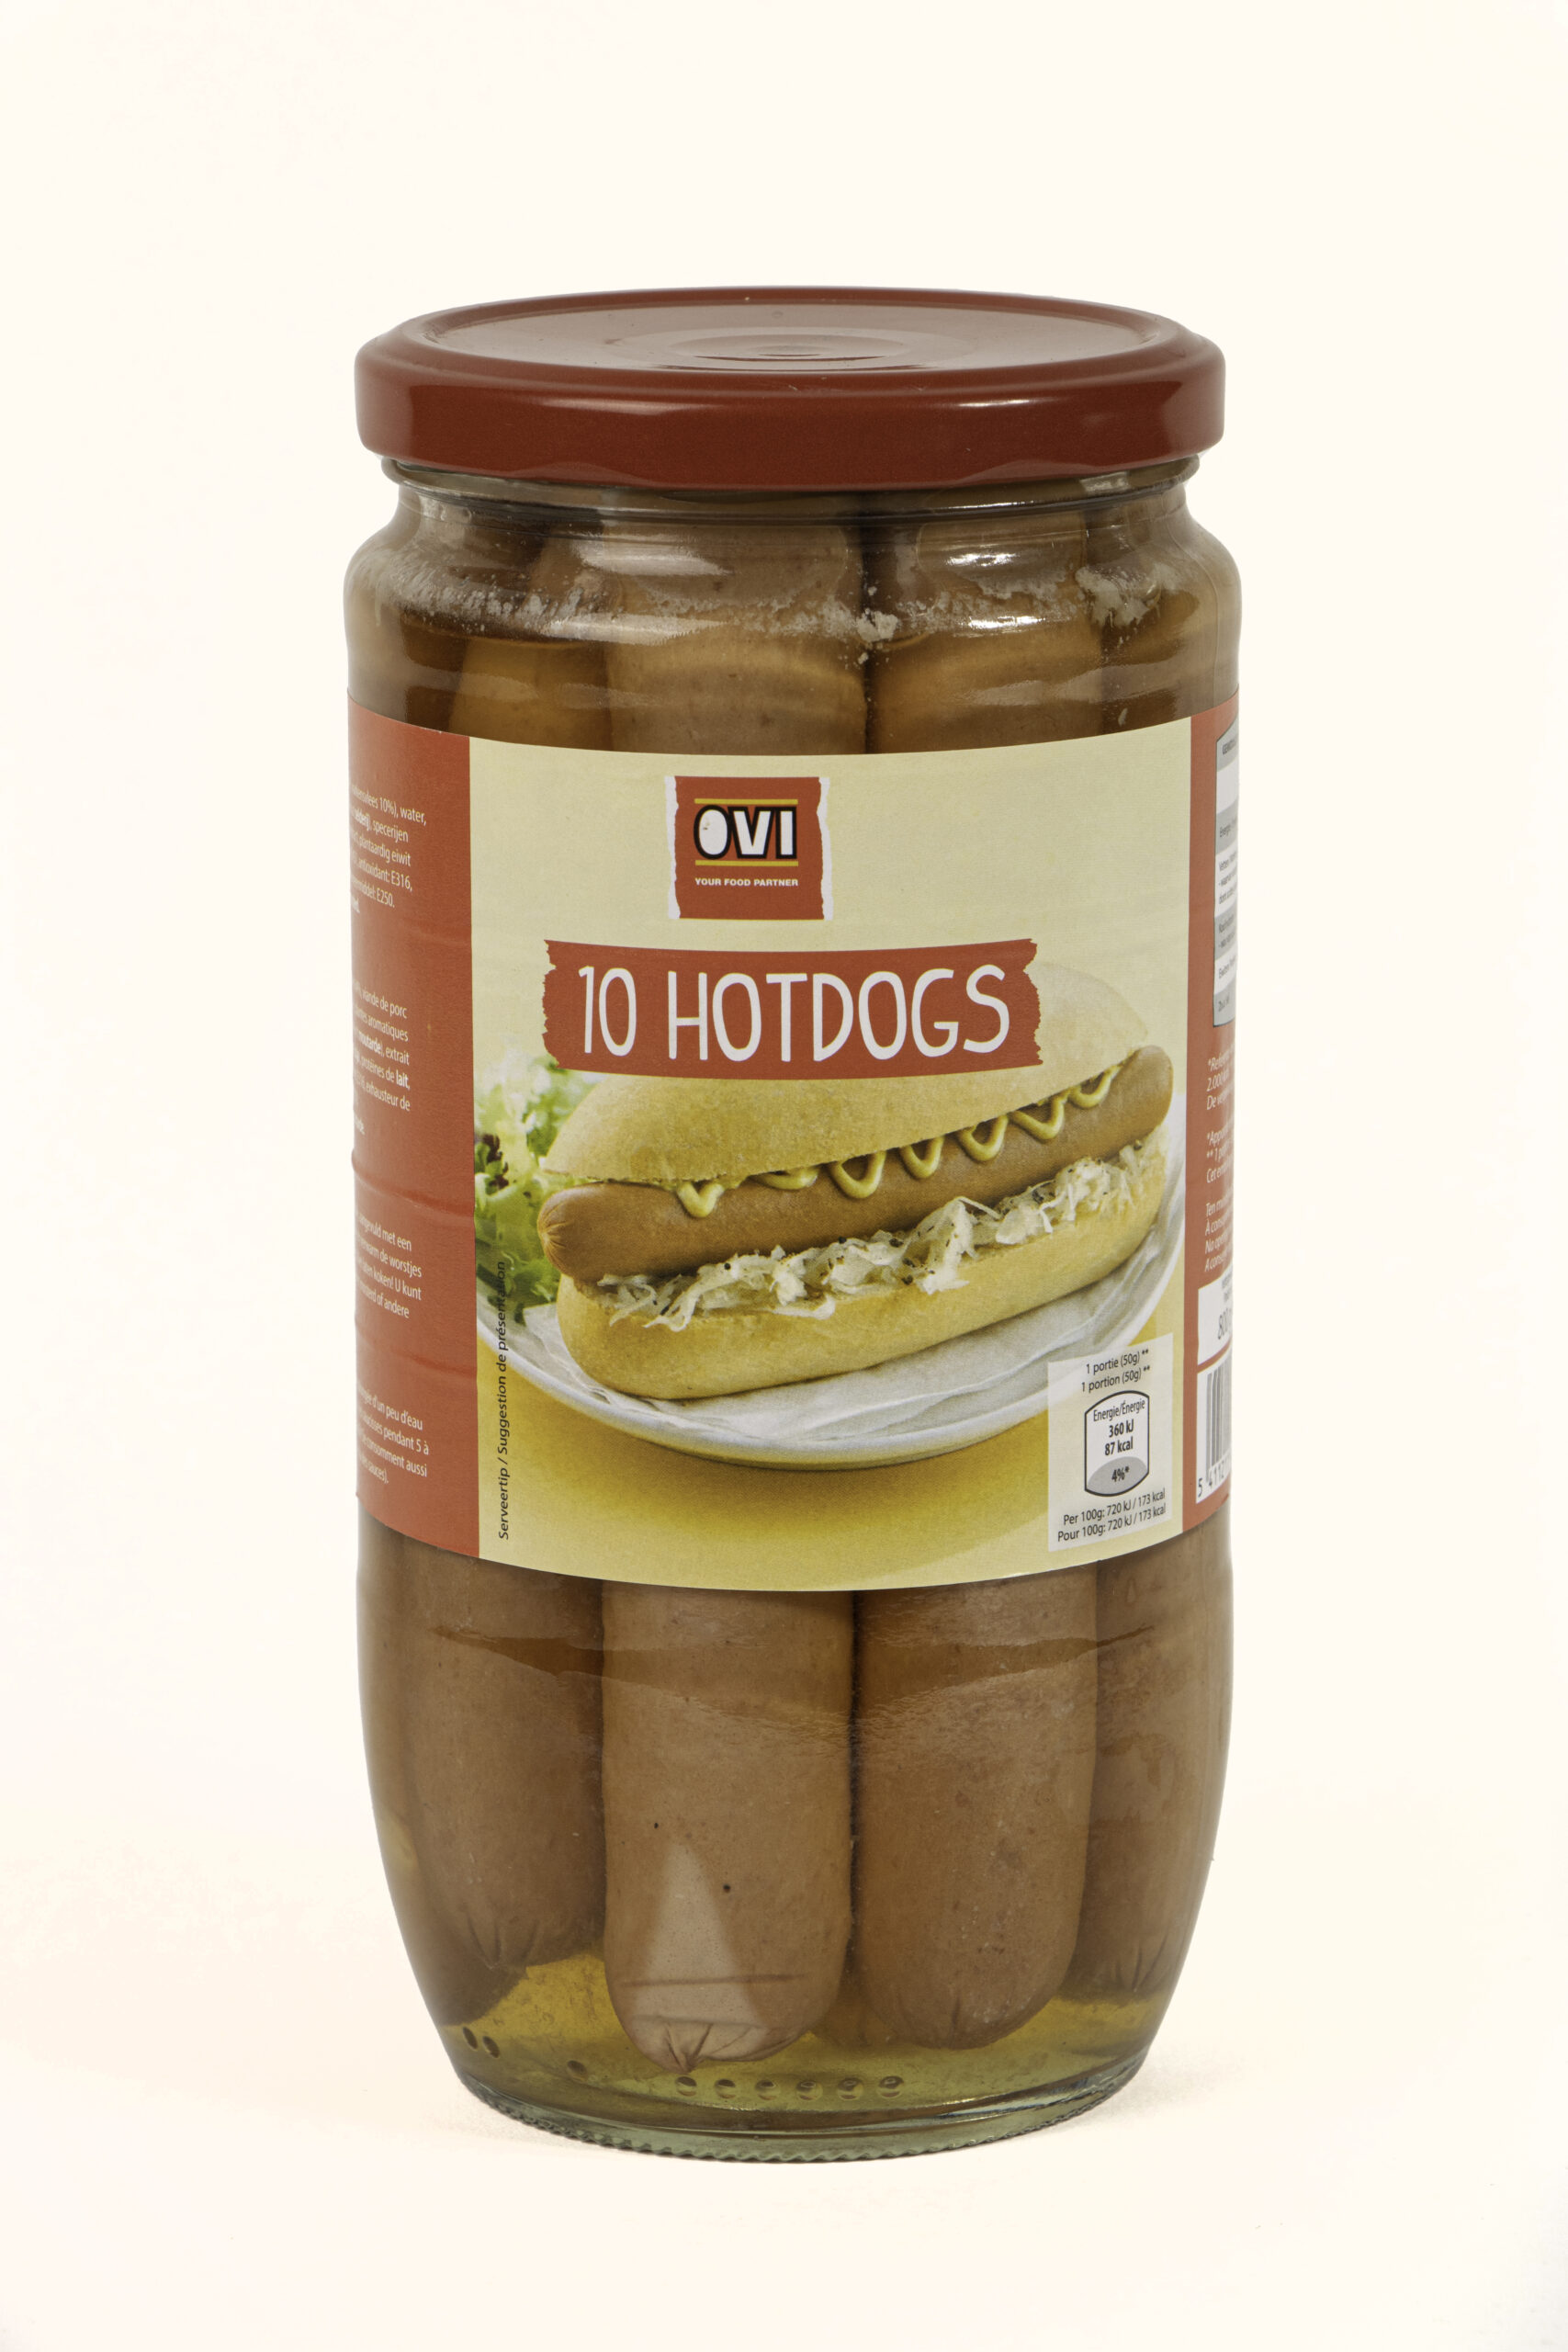 40150 OVI Hotdogs 10 X 50g